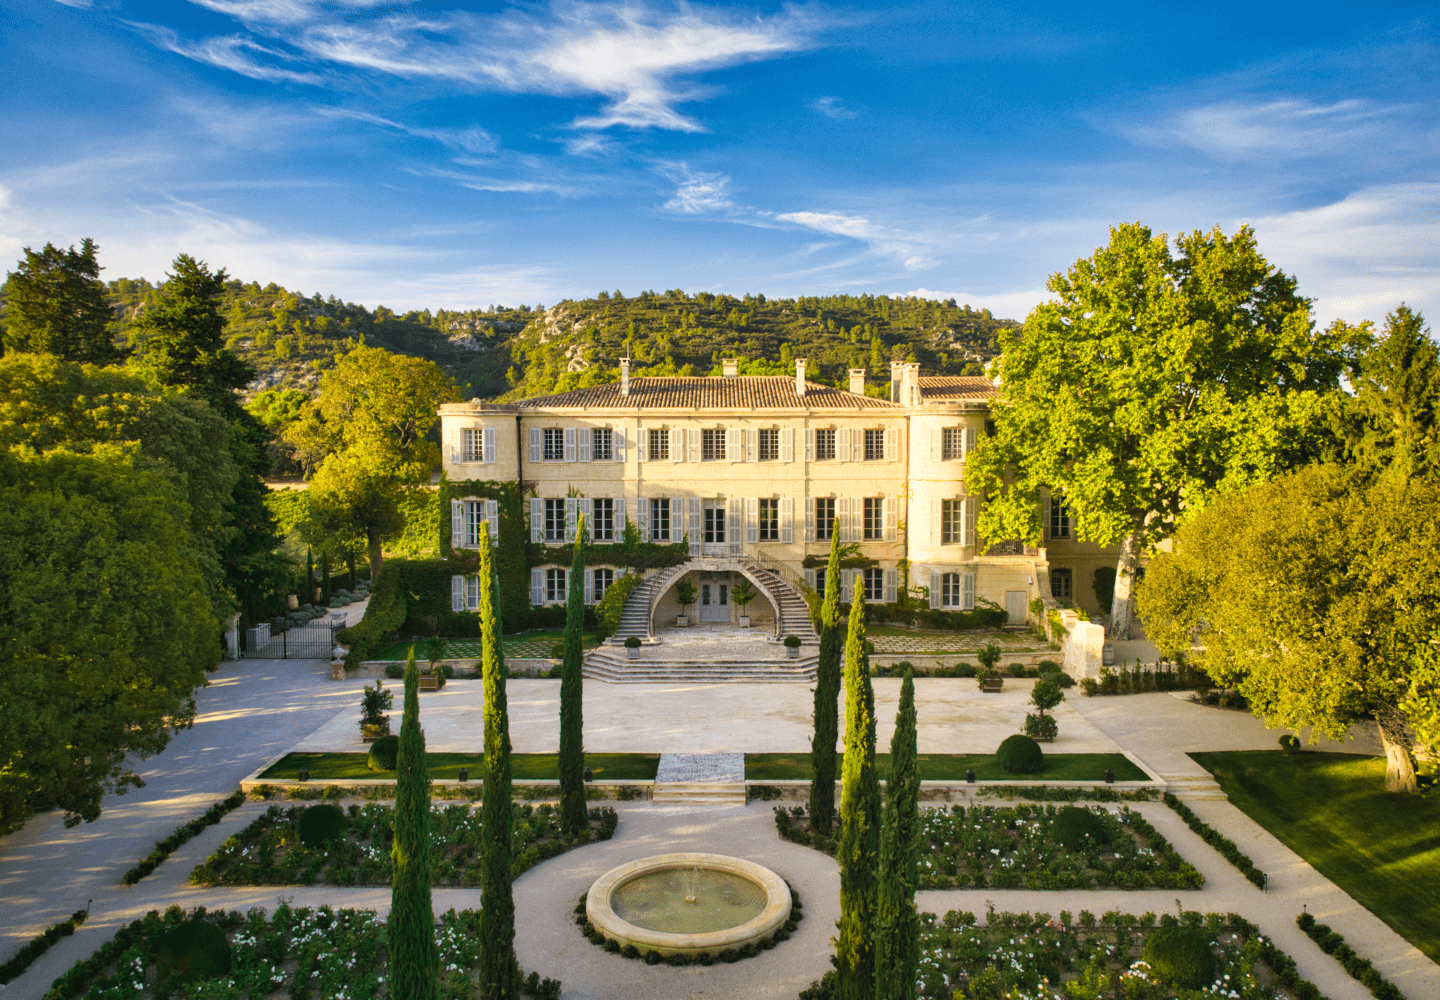 Château-hotel chateau d'Estoublon in Provence